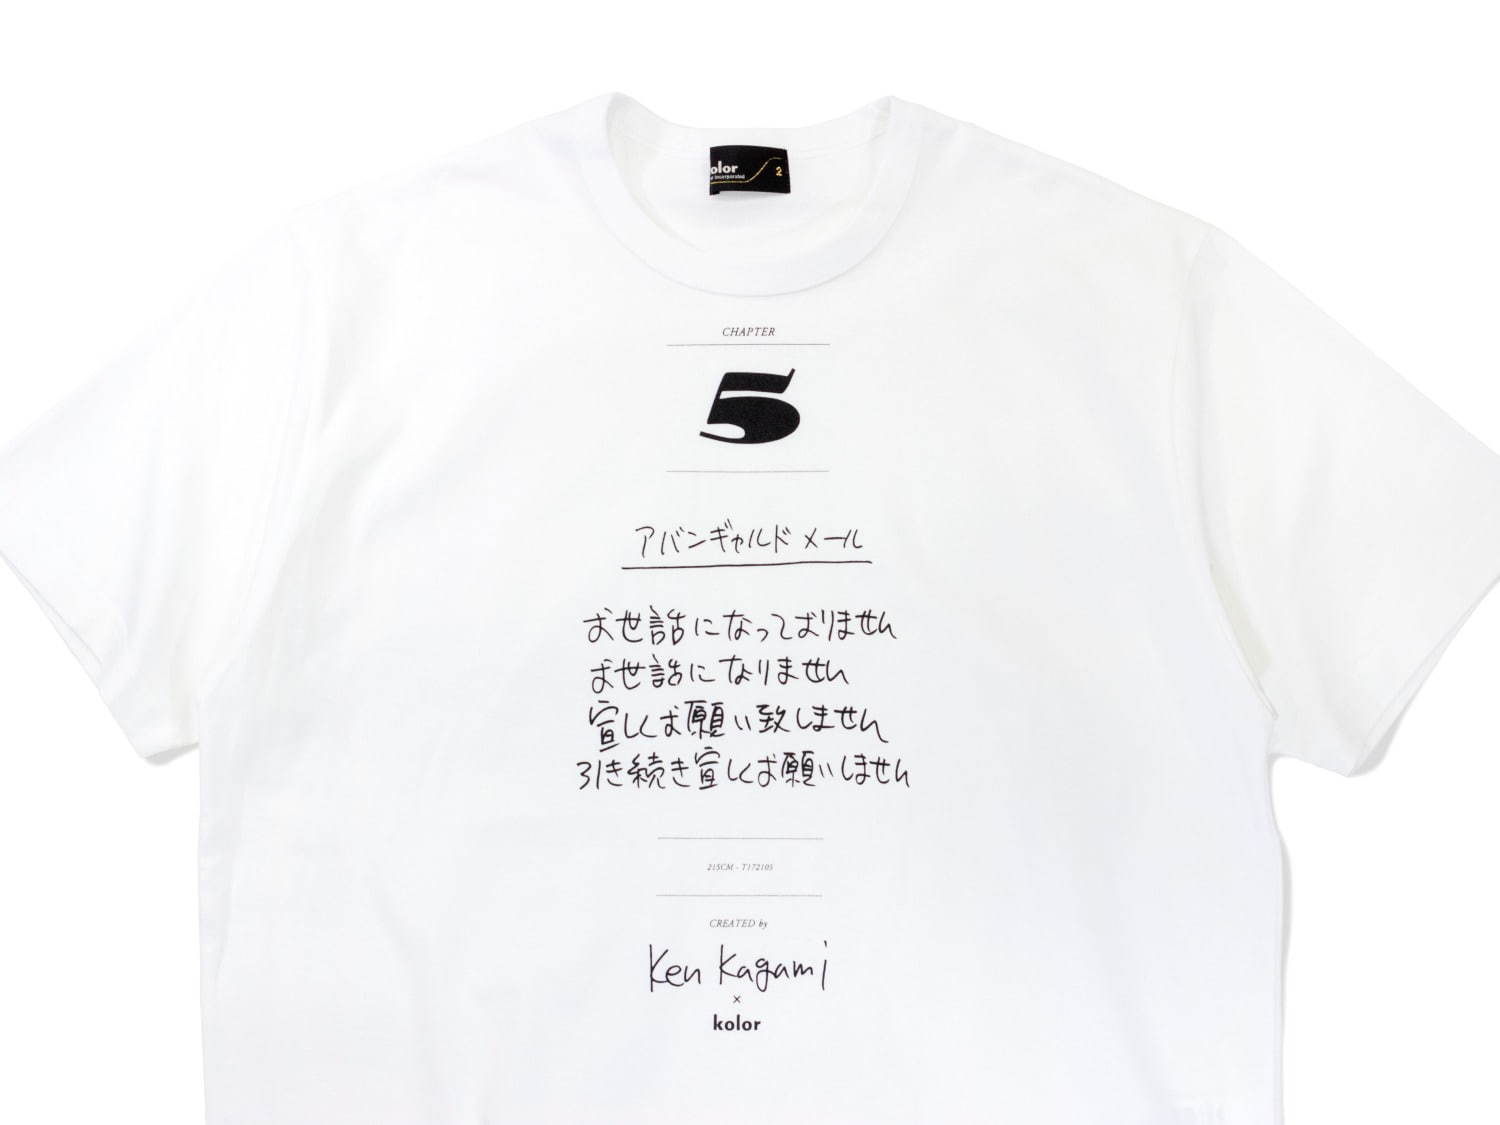 カラー×加賀美健のコラボTシャツ第2弾“アバンギャルド早口言葉”など 